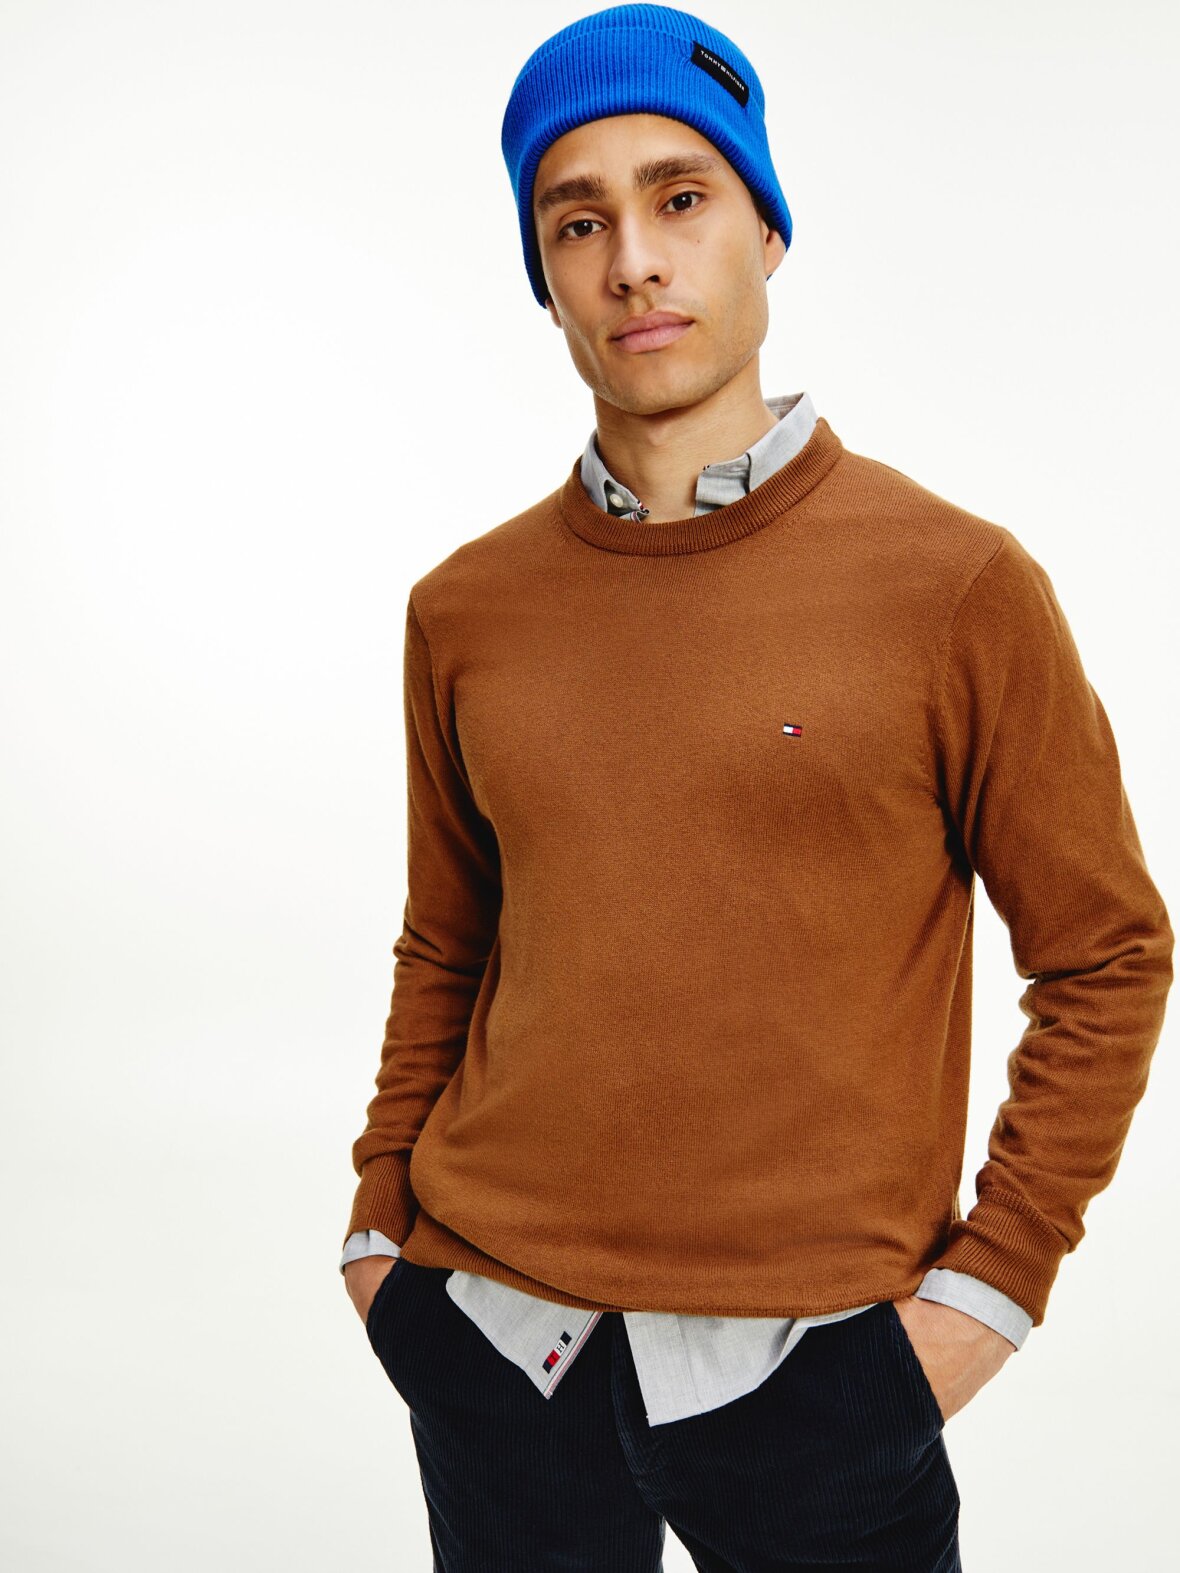 CC Christensen - Sweatshirt Strik - Tommy Hilfiger - Prima Cotton Cashmere